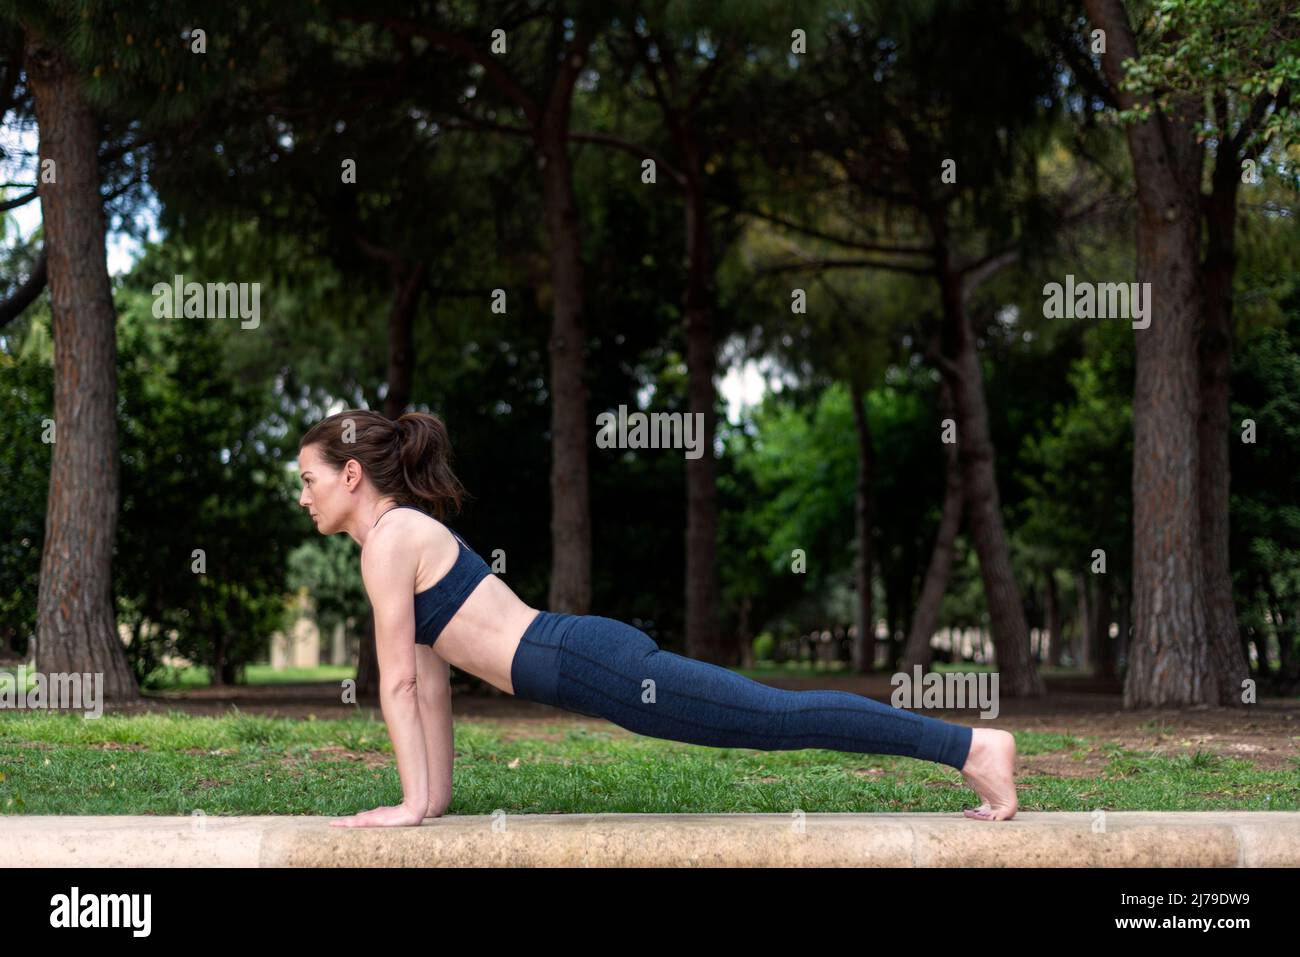 Donna che fa la stampa in su nel parco, esercitazione fisica fuori. Foto Stock